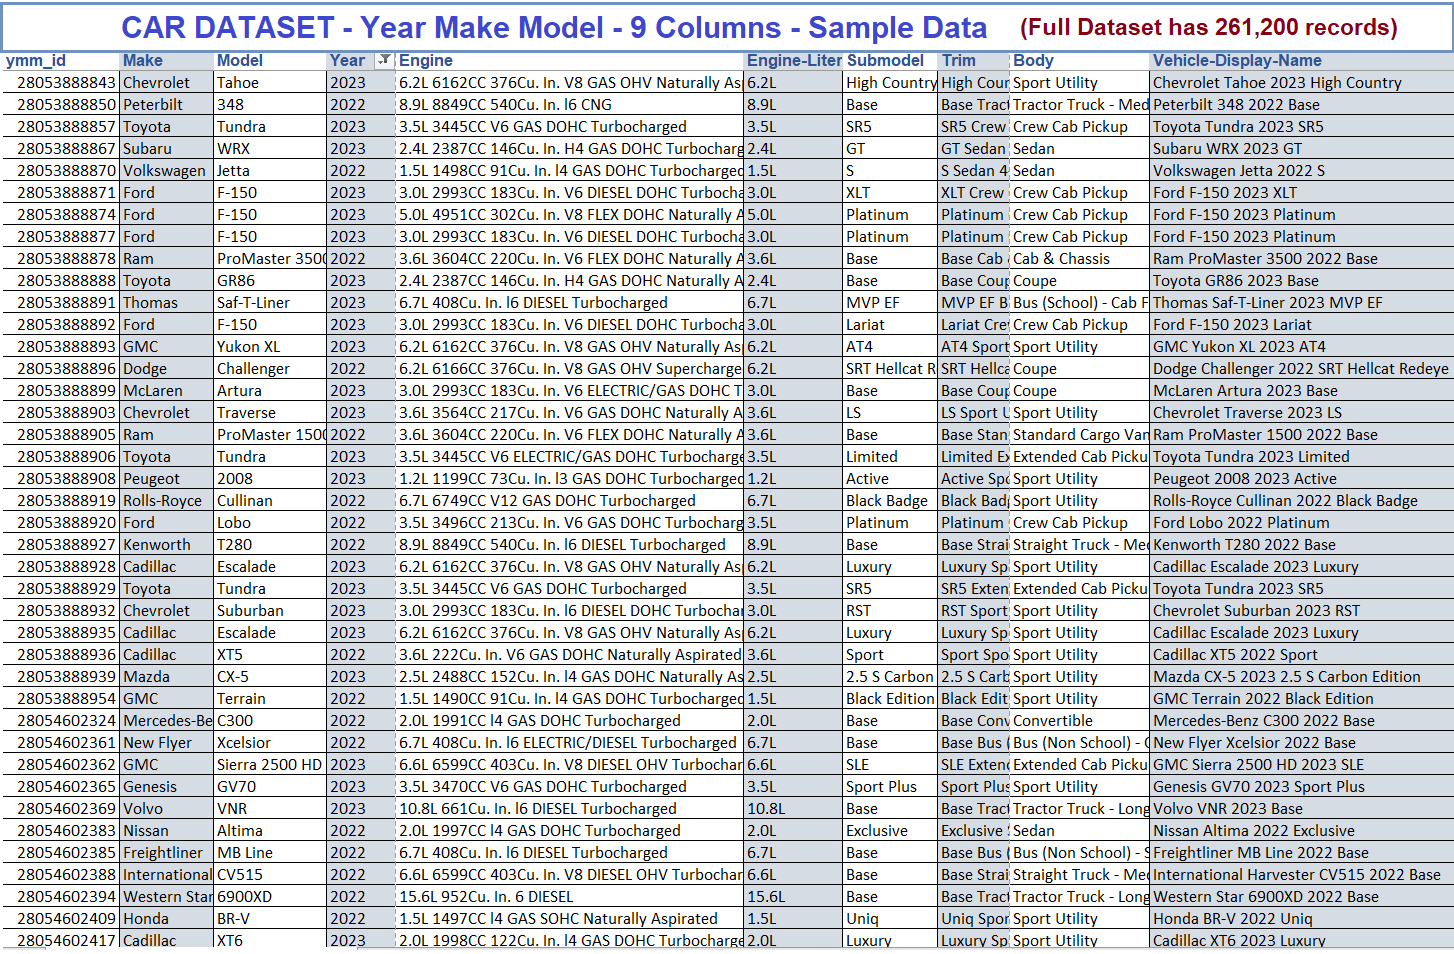 Year Make Model Vehicle database